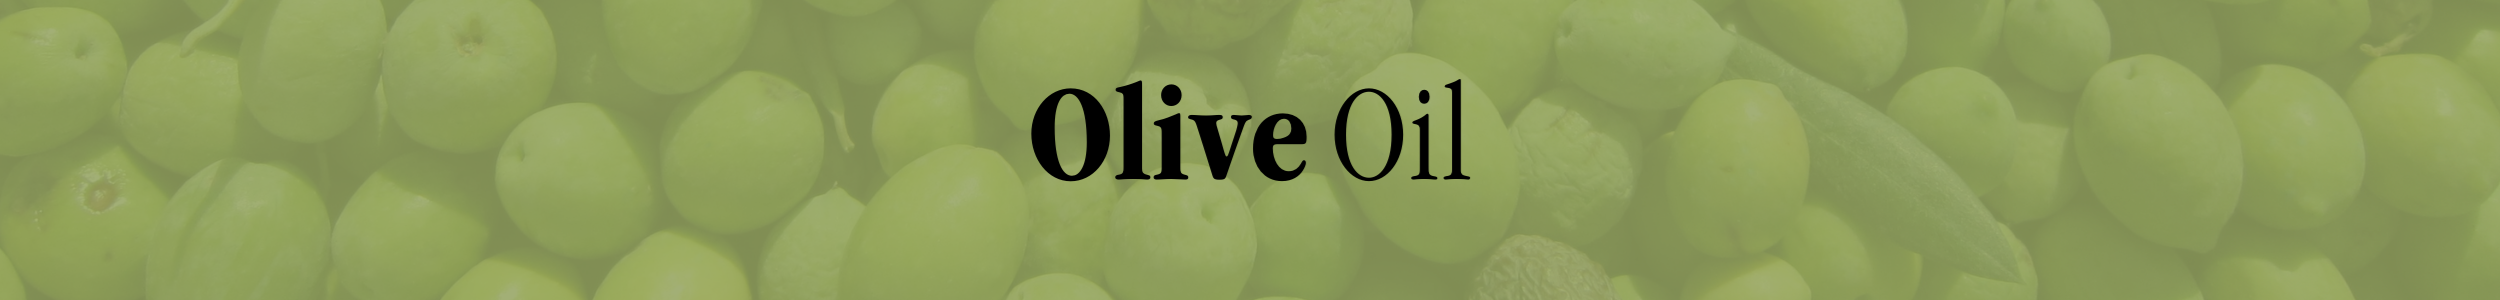 Edição Limitada: Olive Oil